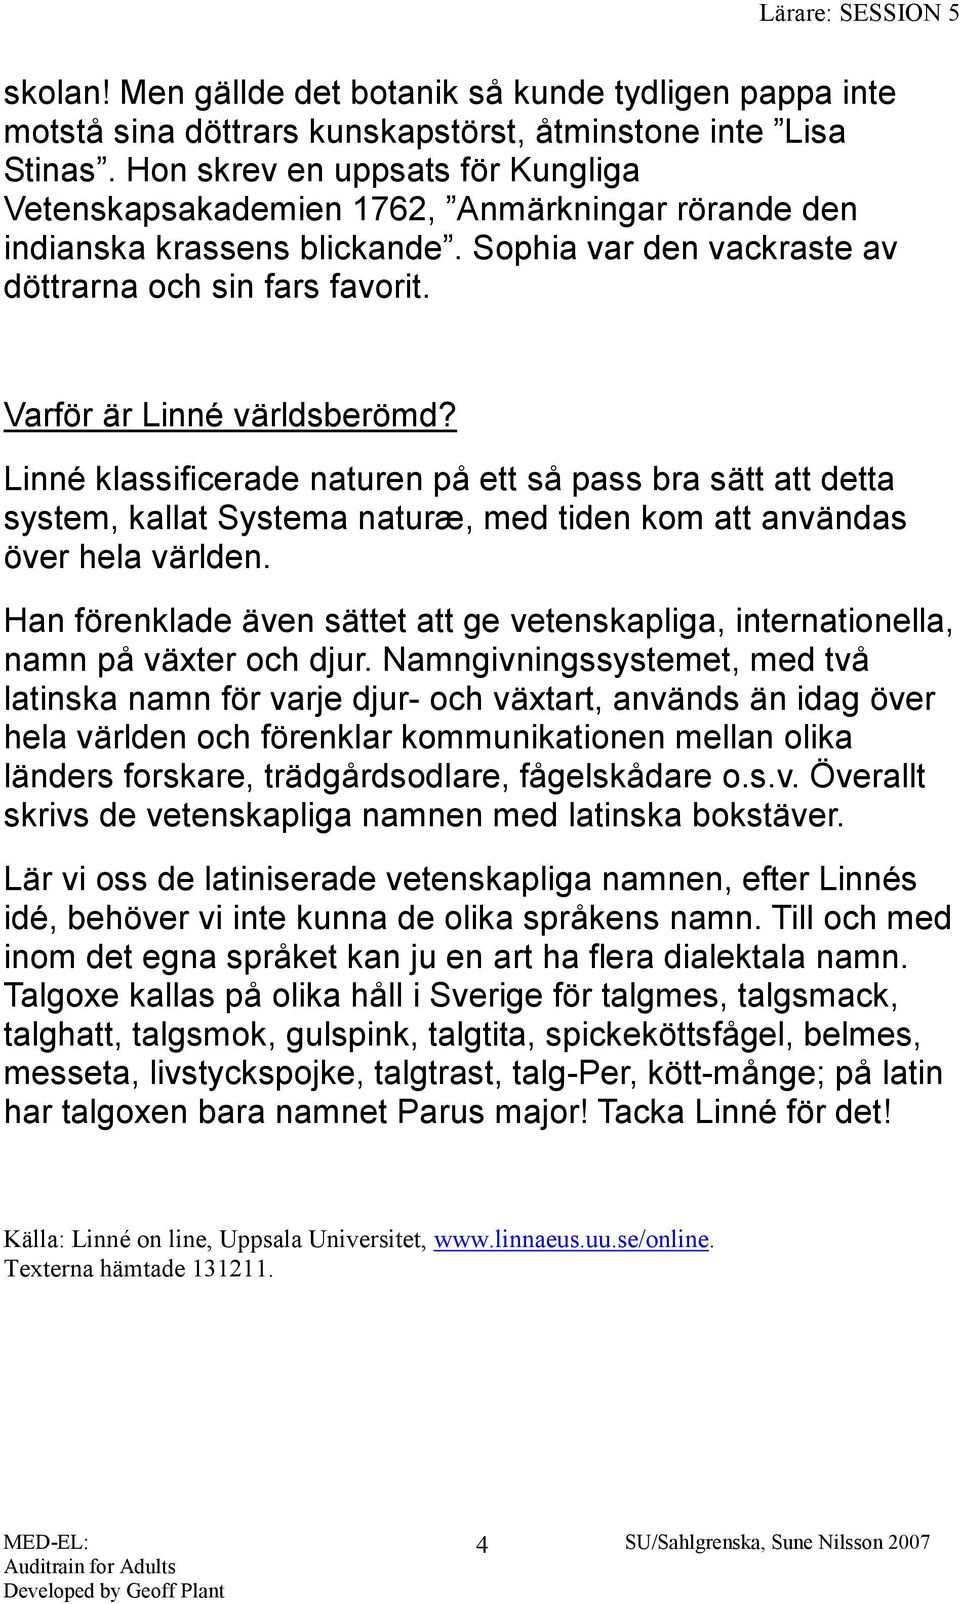 Varför är Linné världsberömd? Linné klassificerade naturen på ett så pass bra sätt att detta system, kallat Systema naturæ, med tiden kom att användas över hela världen.